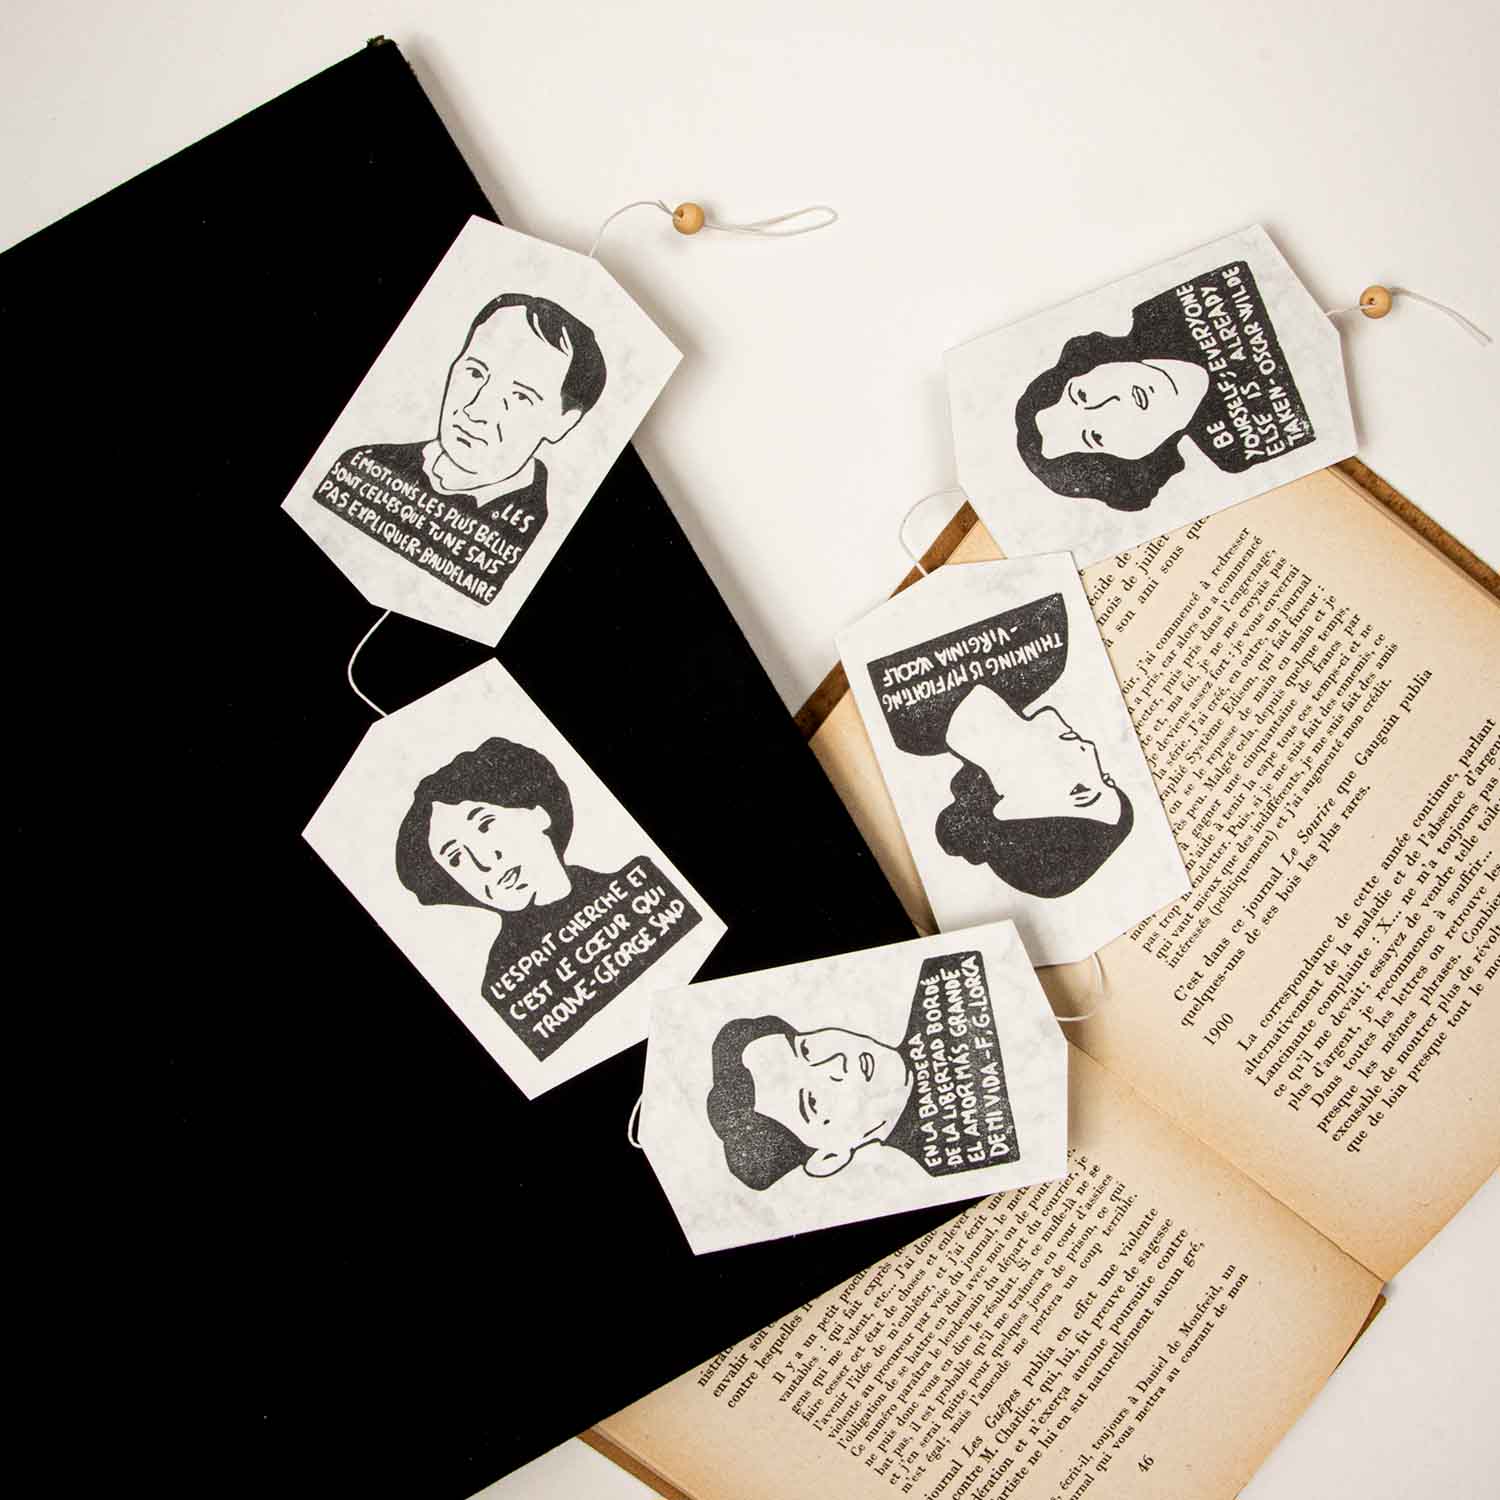 Marcadores hechos a mano con retratos y citas de personajes históricos famosos colocados sobre un libro abierto y una superficie negra.